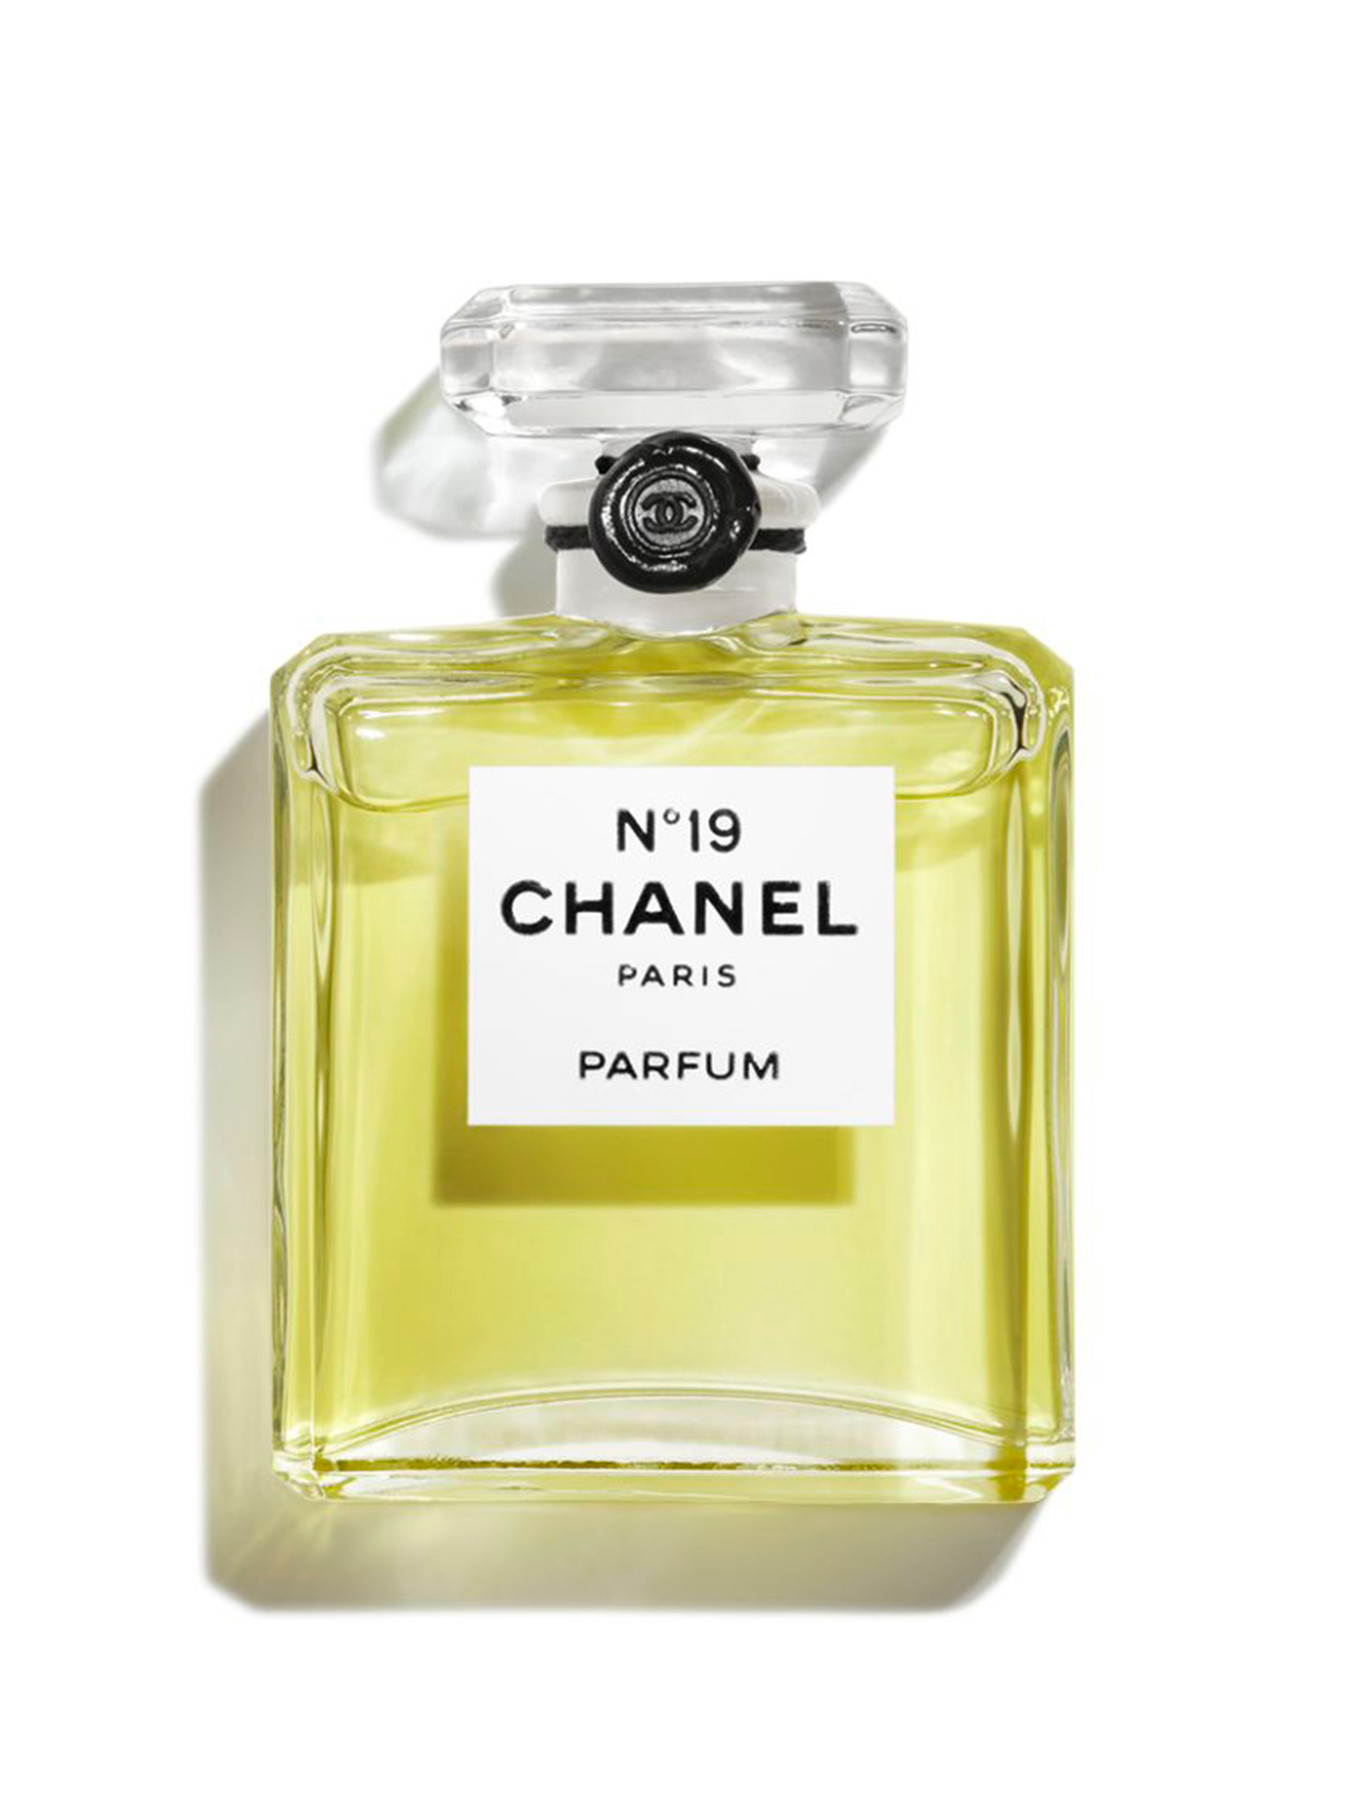 CHANEL N°19 Parfum Bottle 15ml | Women's Fragrances | Fenwick